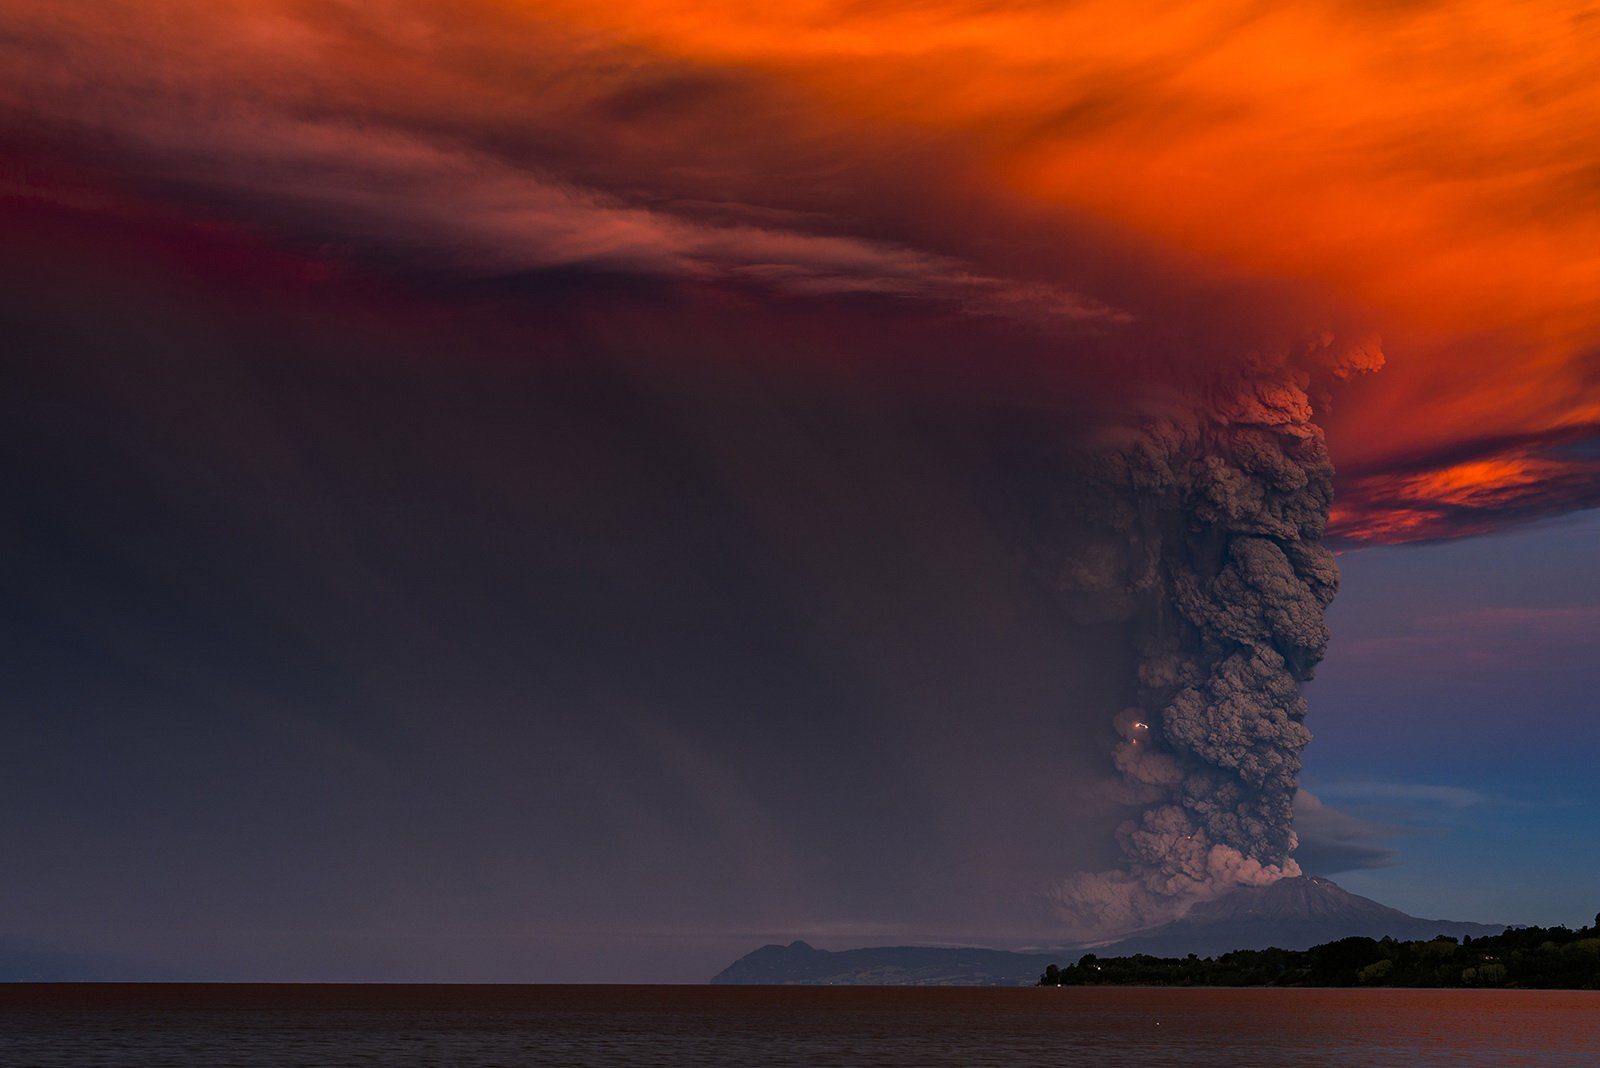 Chile, volcano